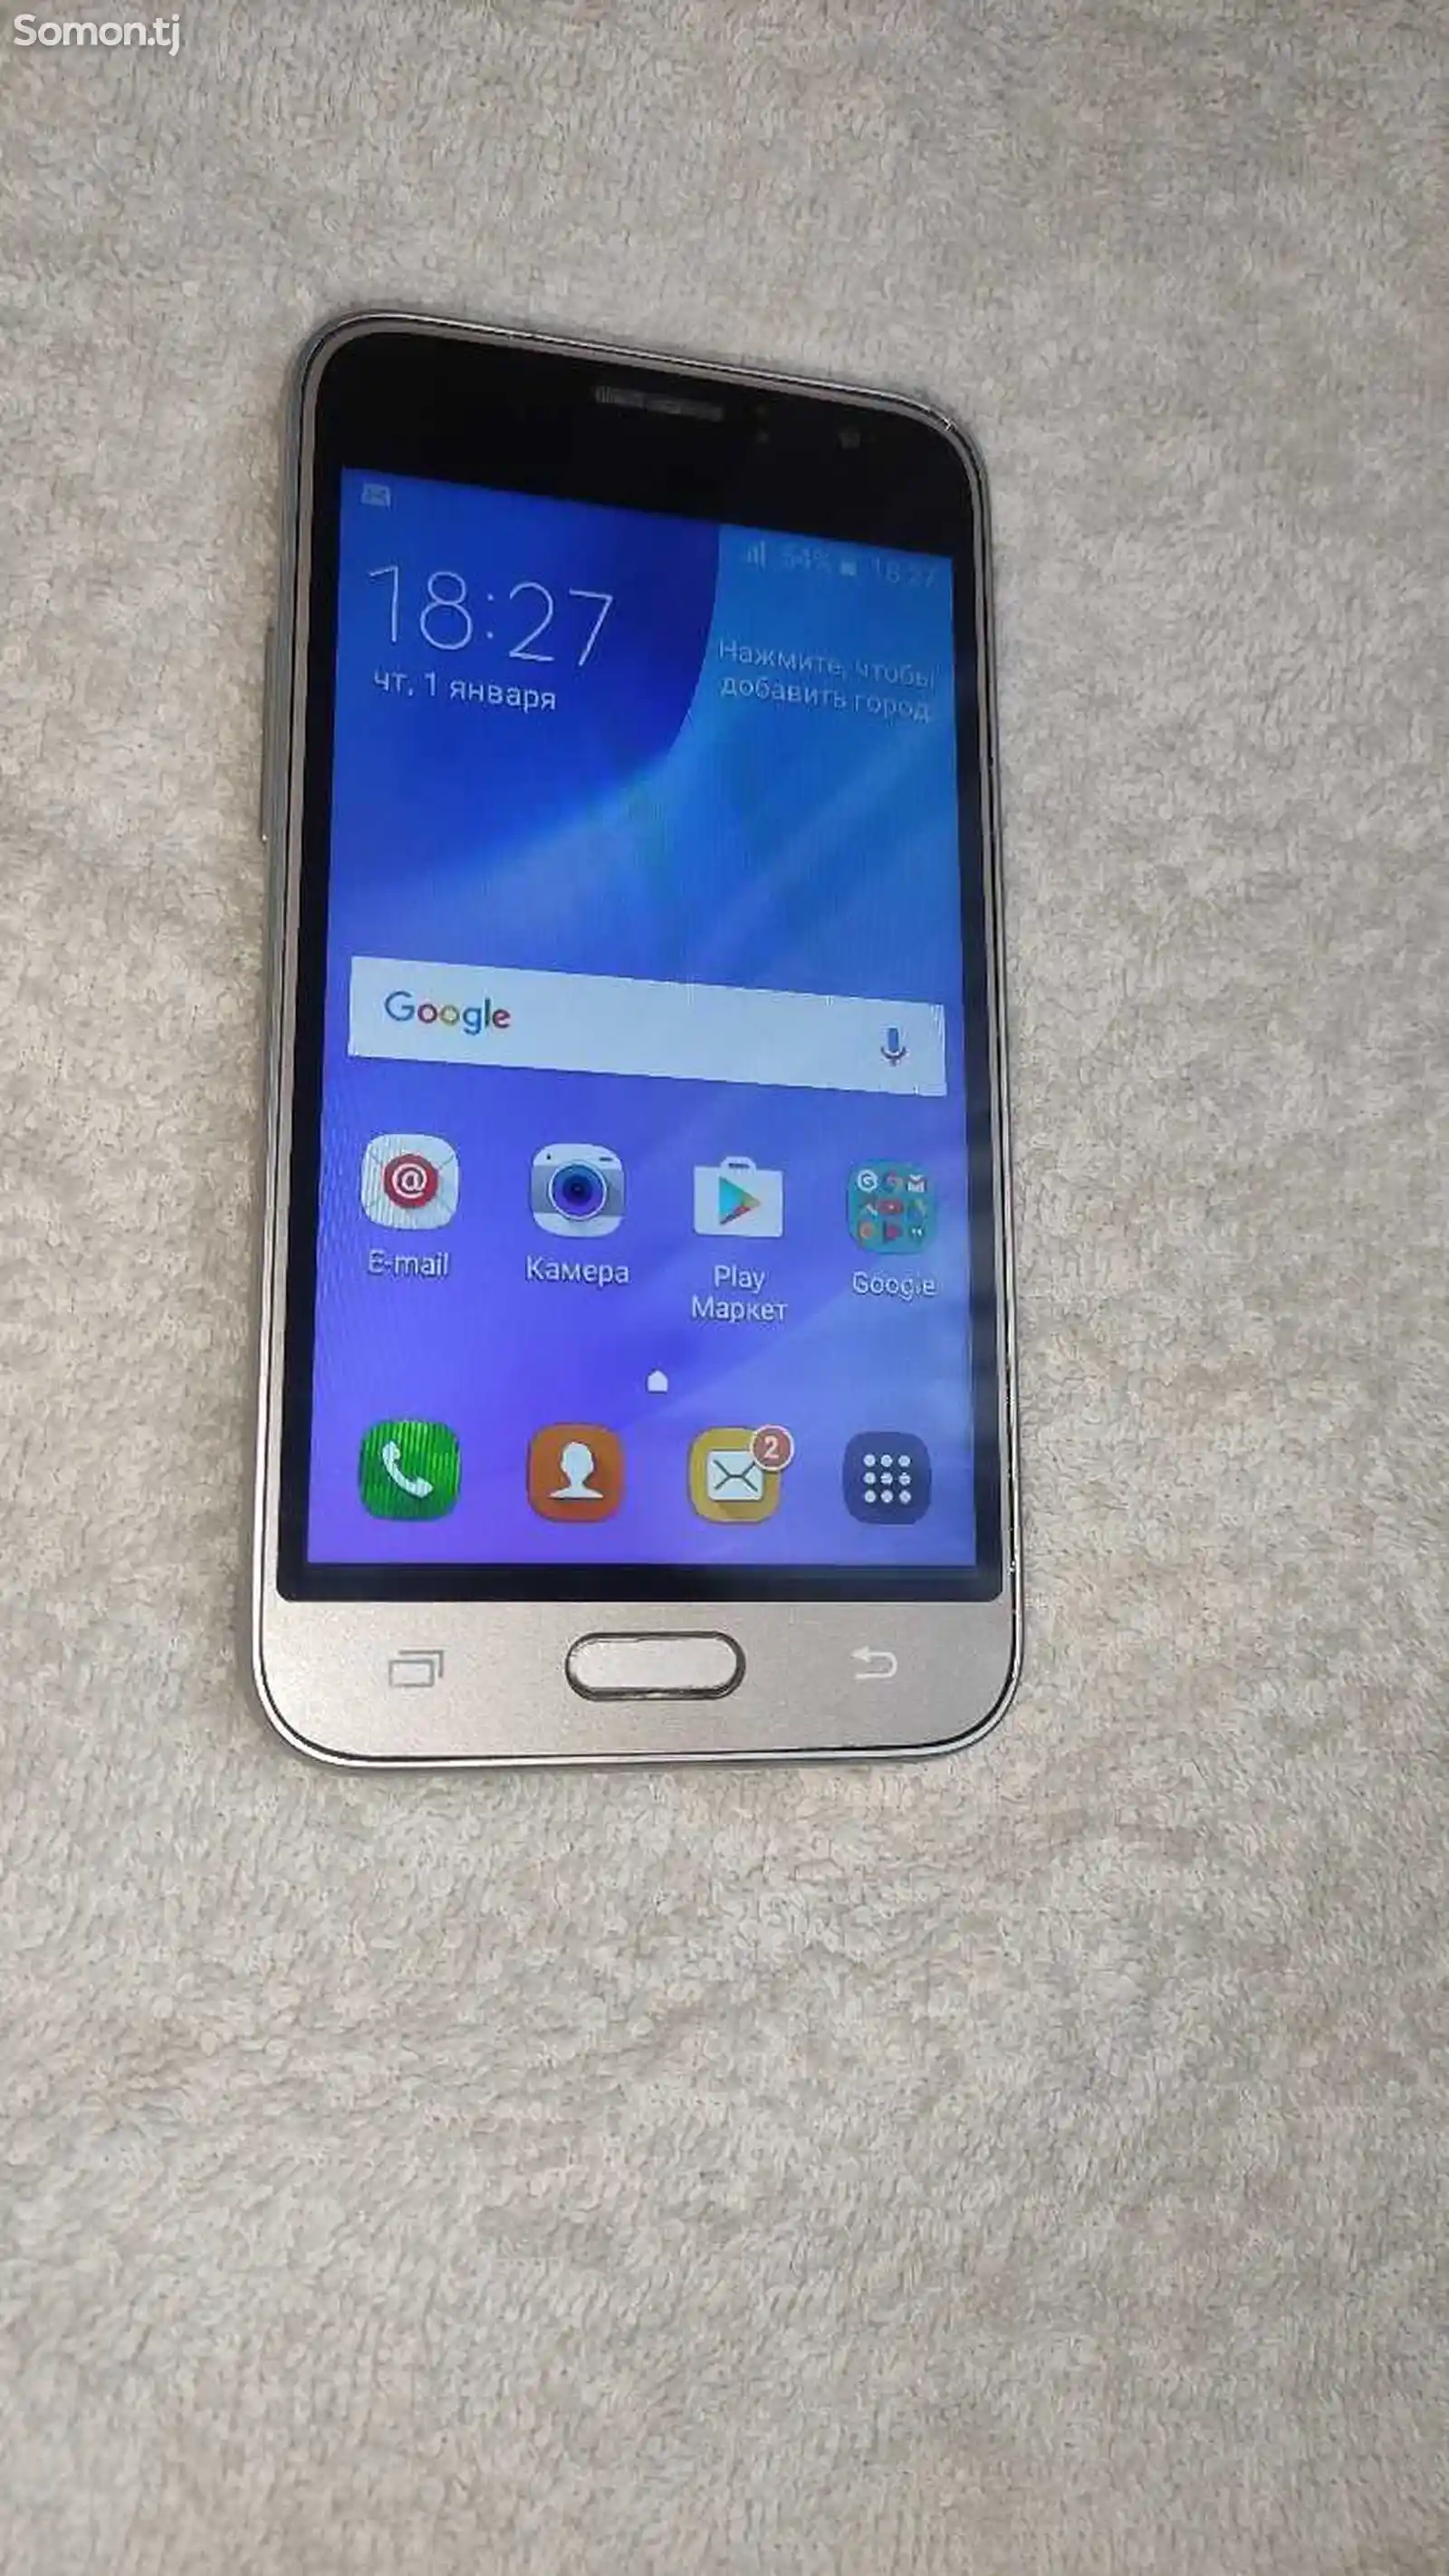 Samsung Galaxy J3 8GB-2